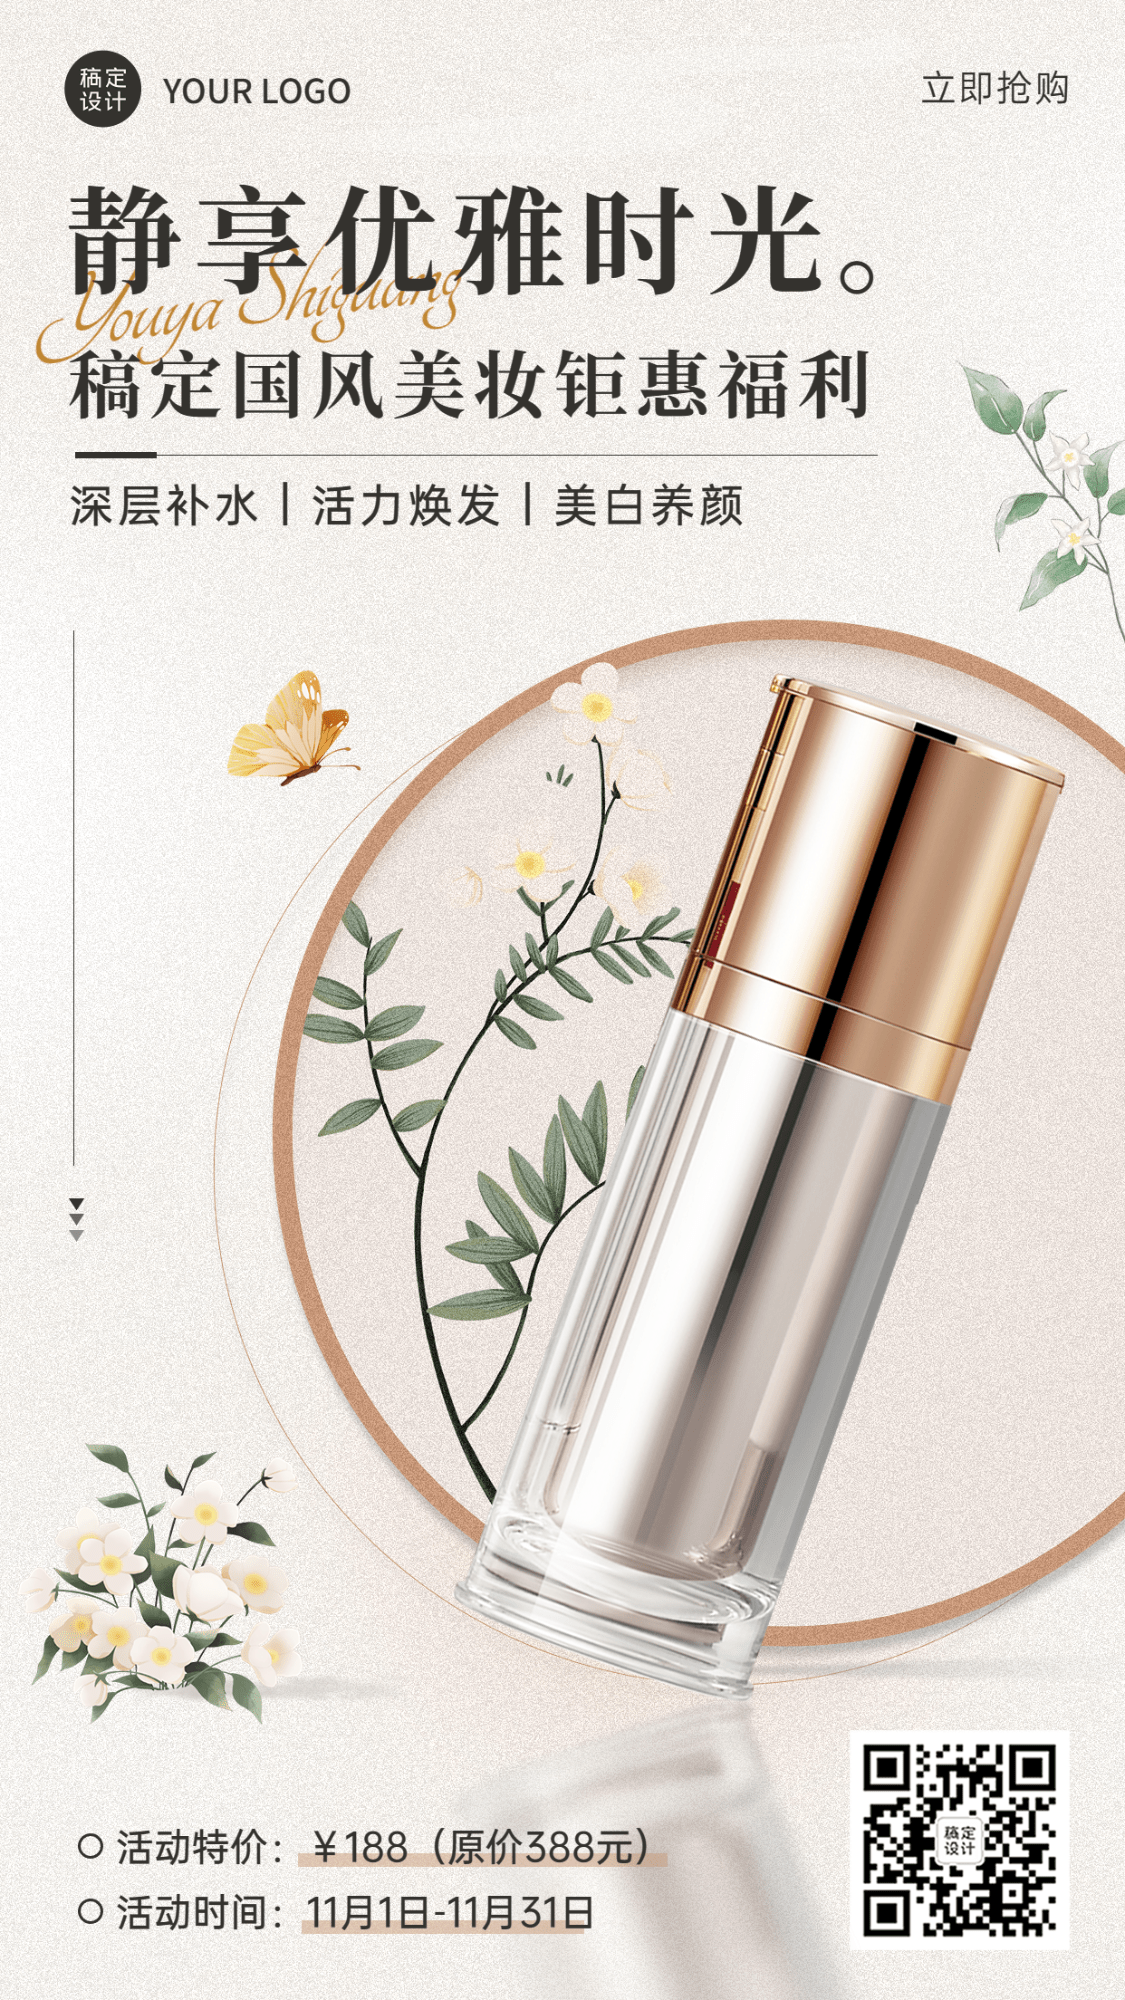 美容美妆产品展示营销介绍中国风手机海报预览效果